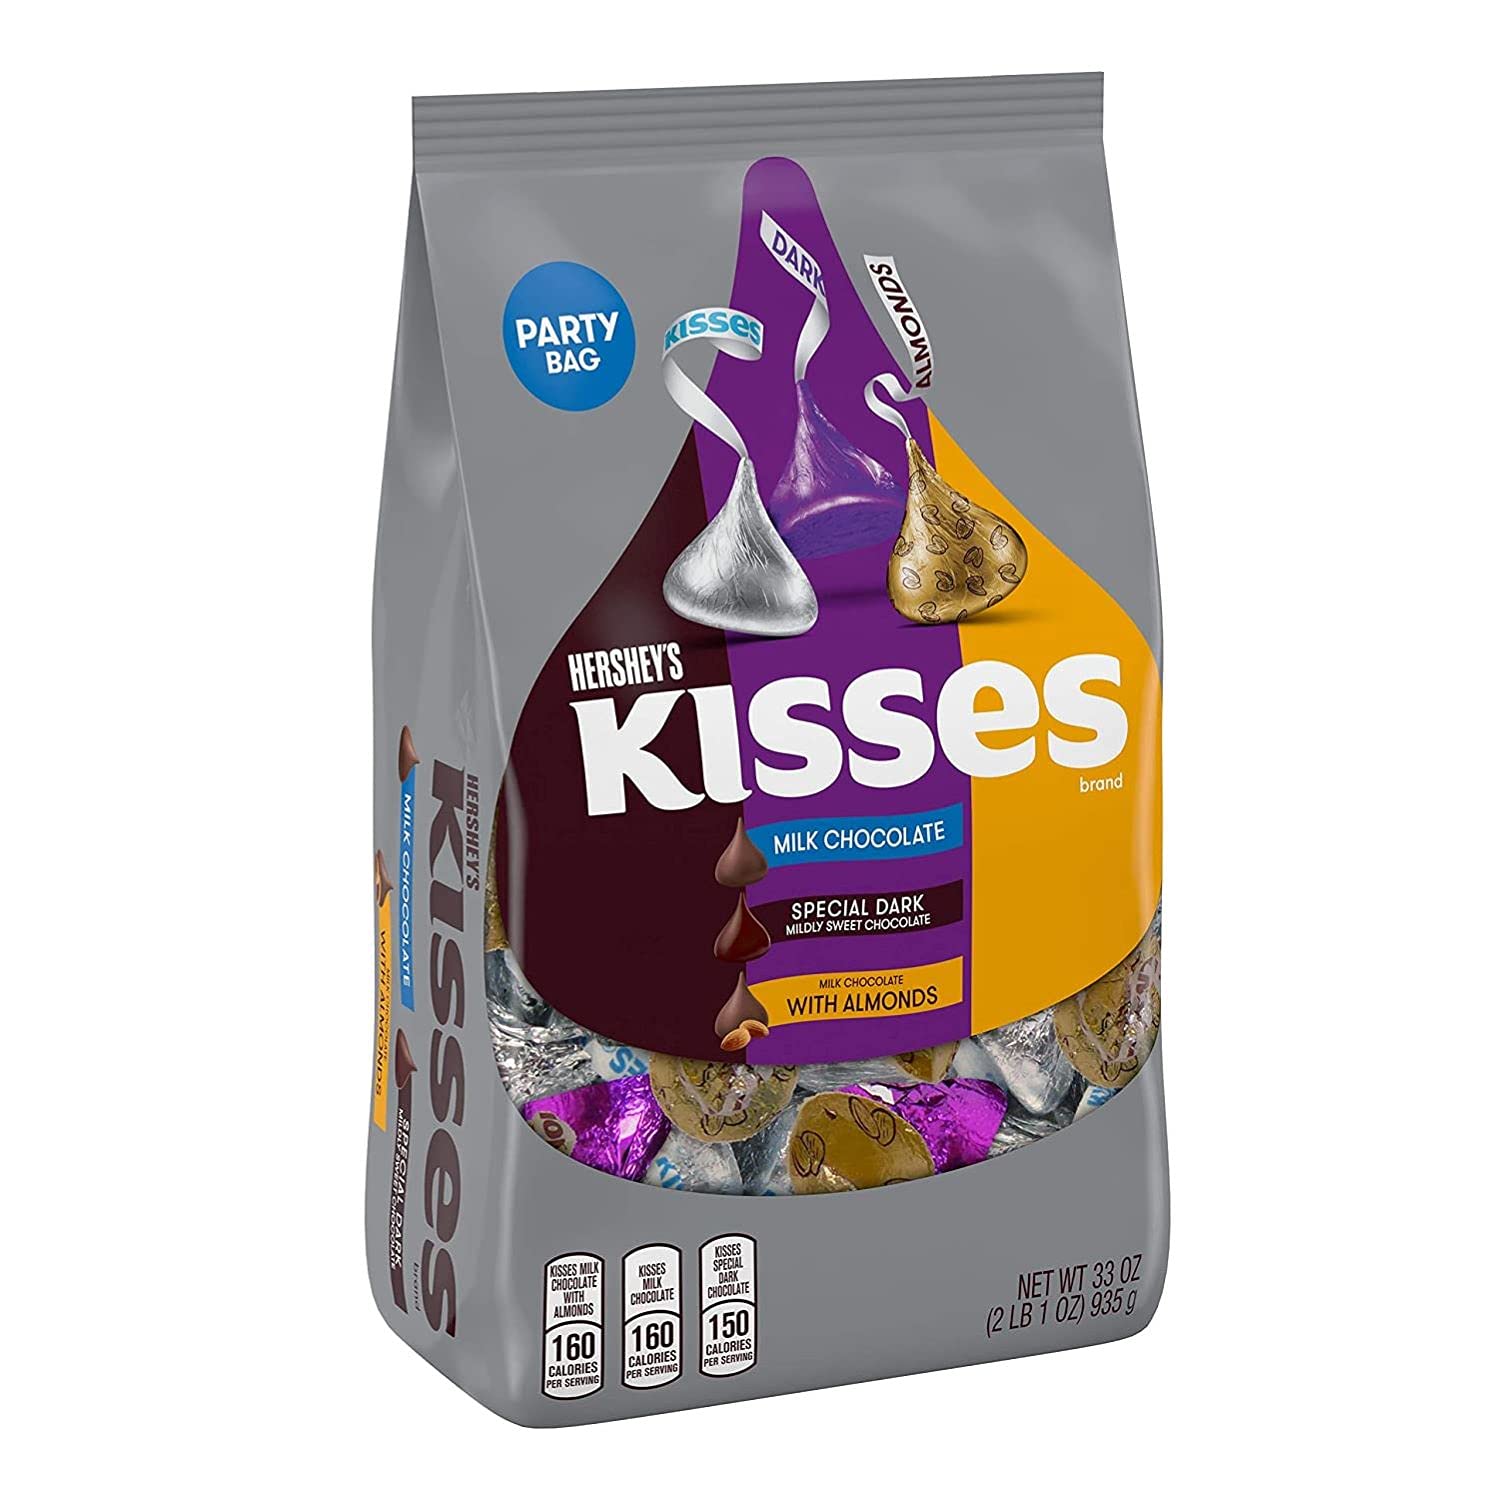 TÚI 935g MIX 3 LOẠI SOCOLA HERSHEY'S KISSES Assorted Chocolate Candy, 33oz (socola sữa, socola đen và socola sữa với hạnh nhân)